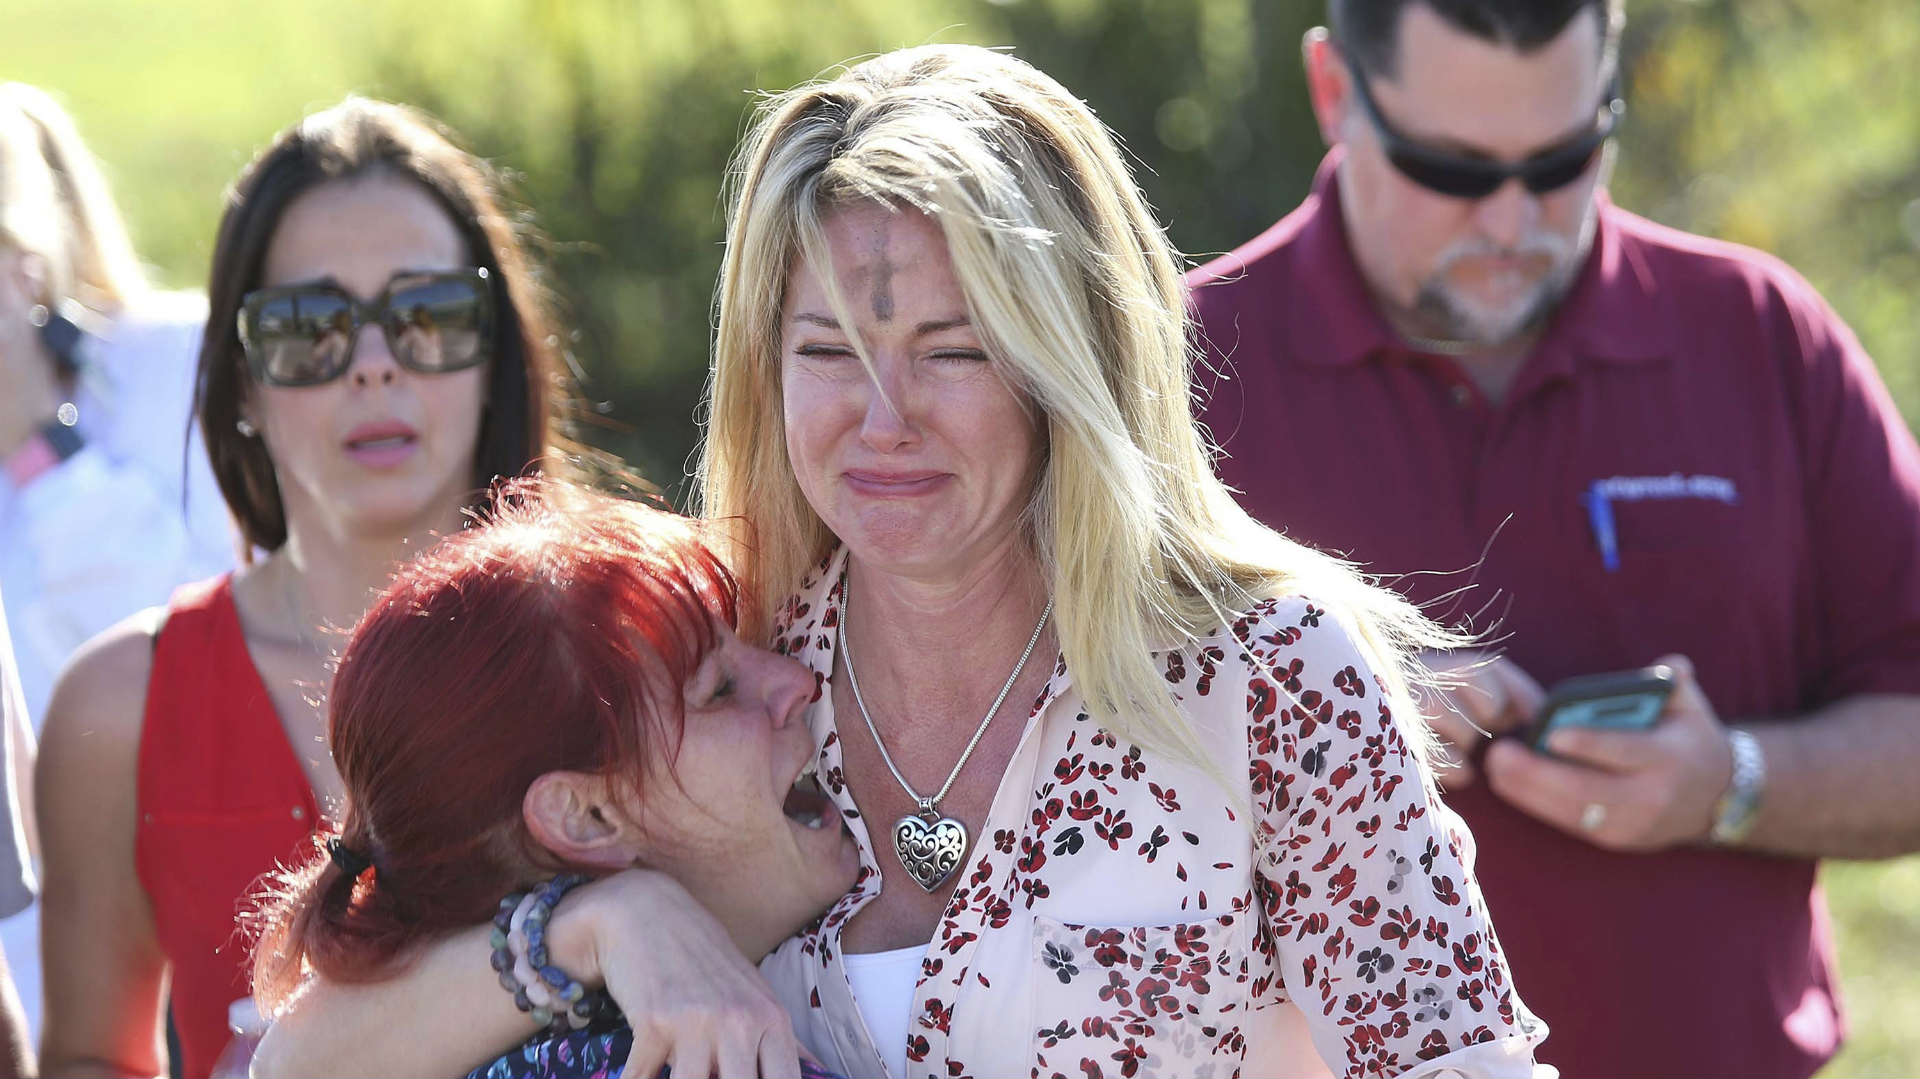 Un tiroteo en un instituto de Florida deja al menos 17 muertos